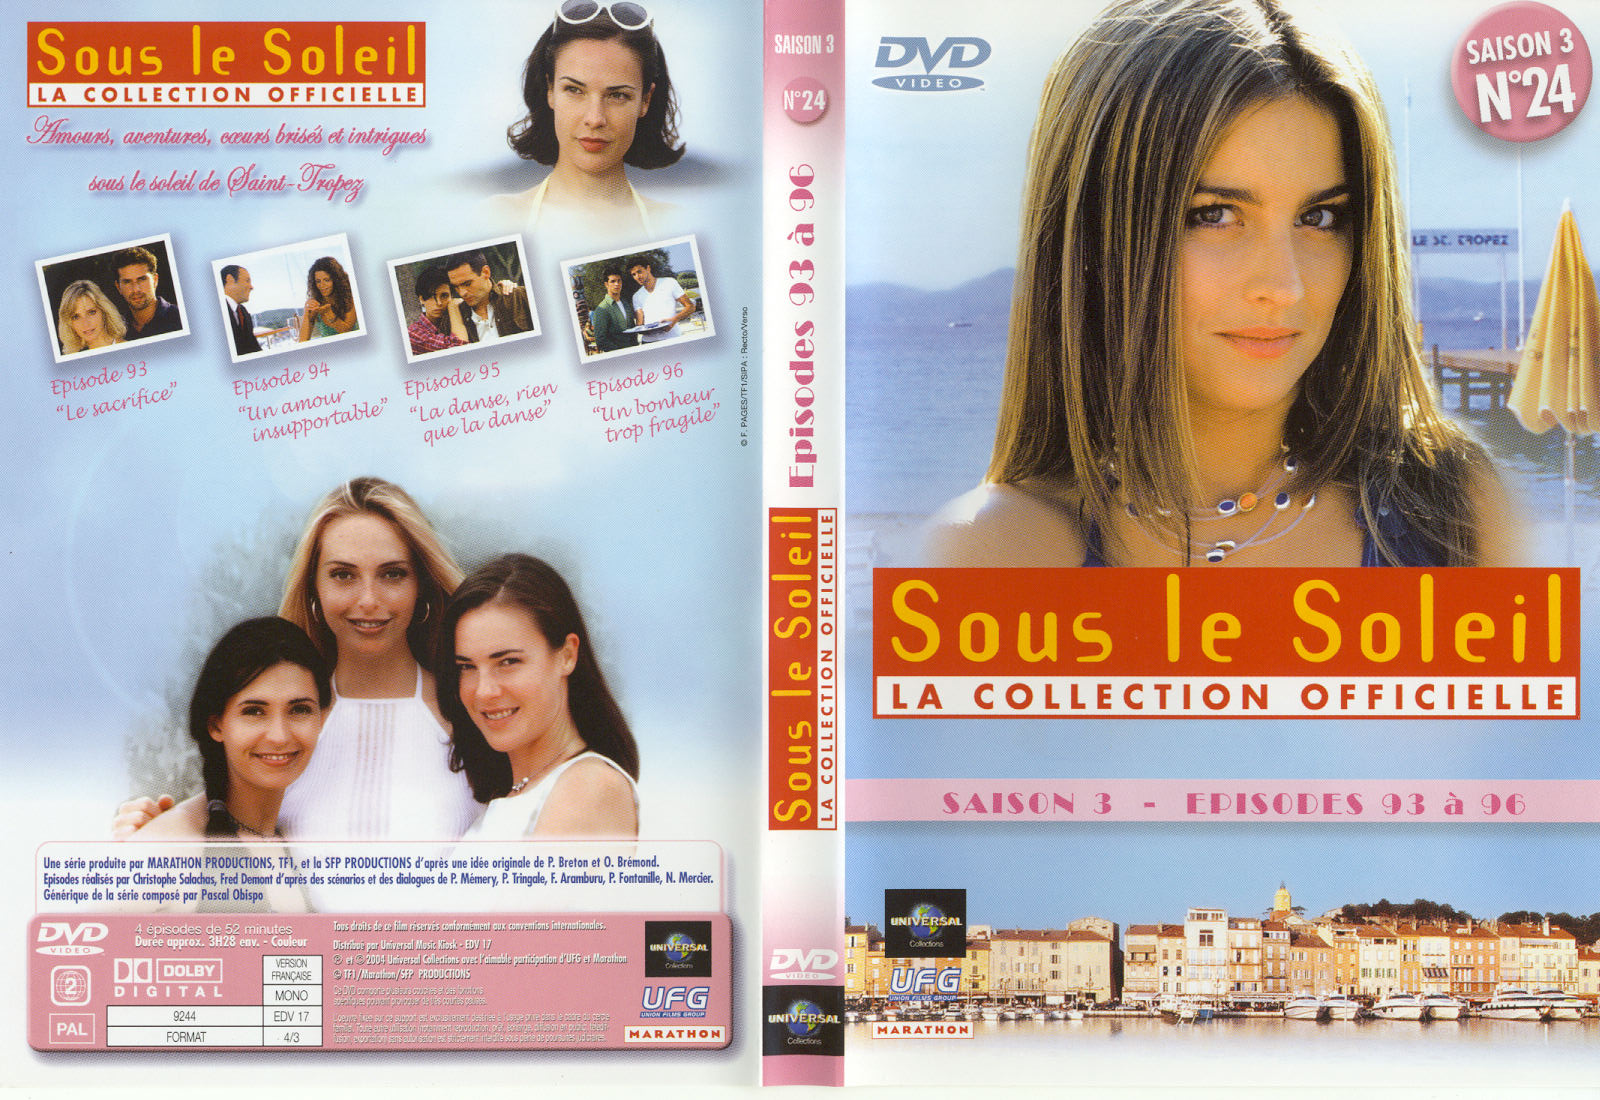 Jaquette DVD Sous le soleil saison 3 vol 24